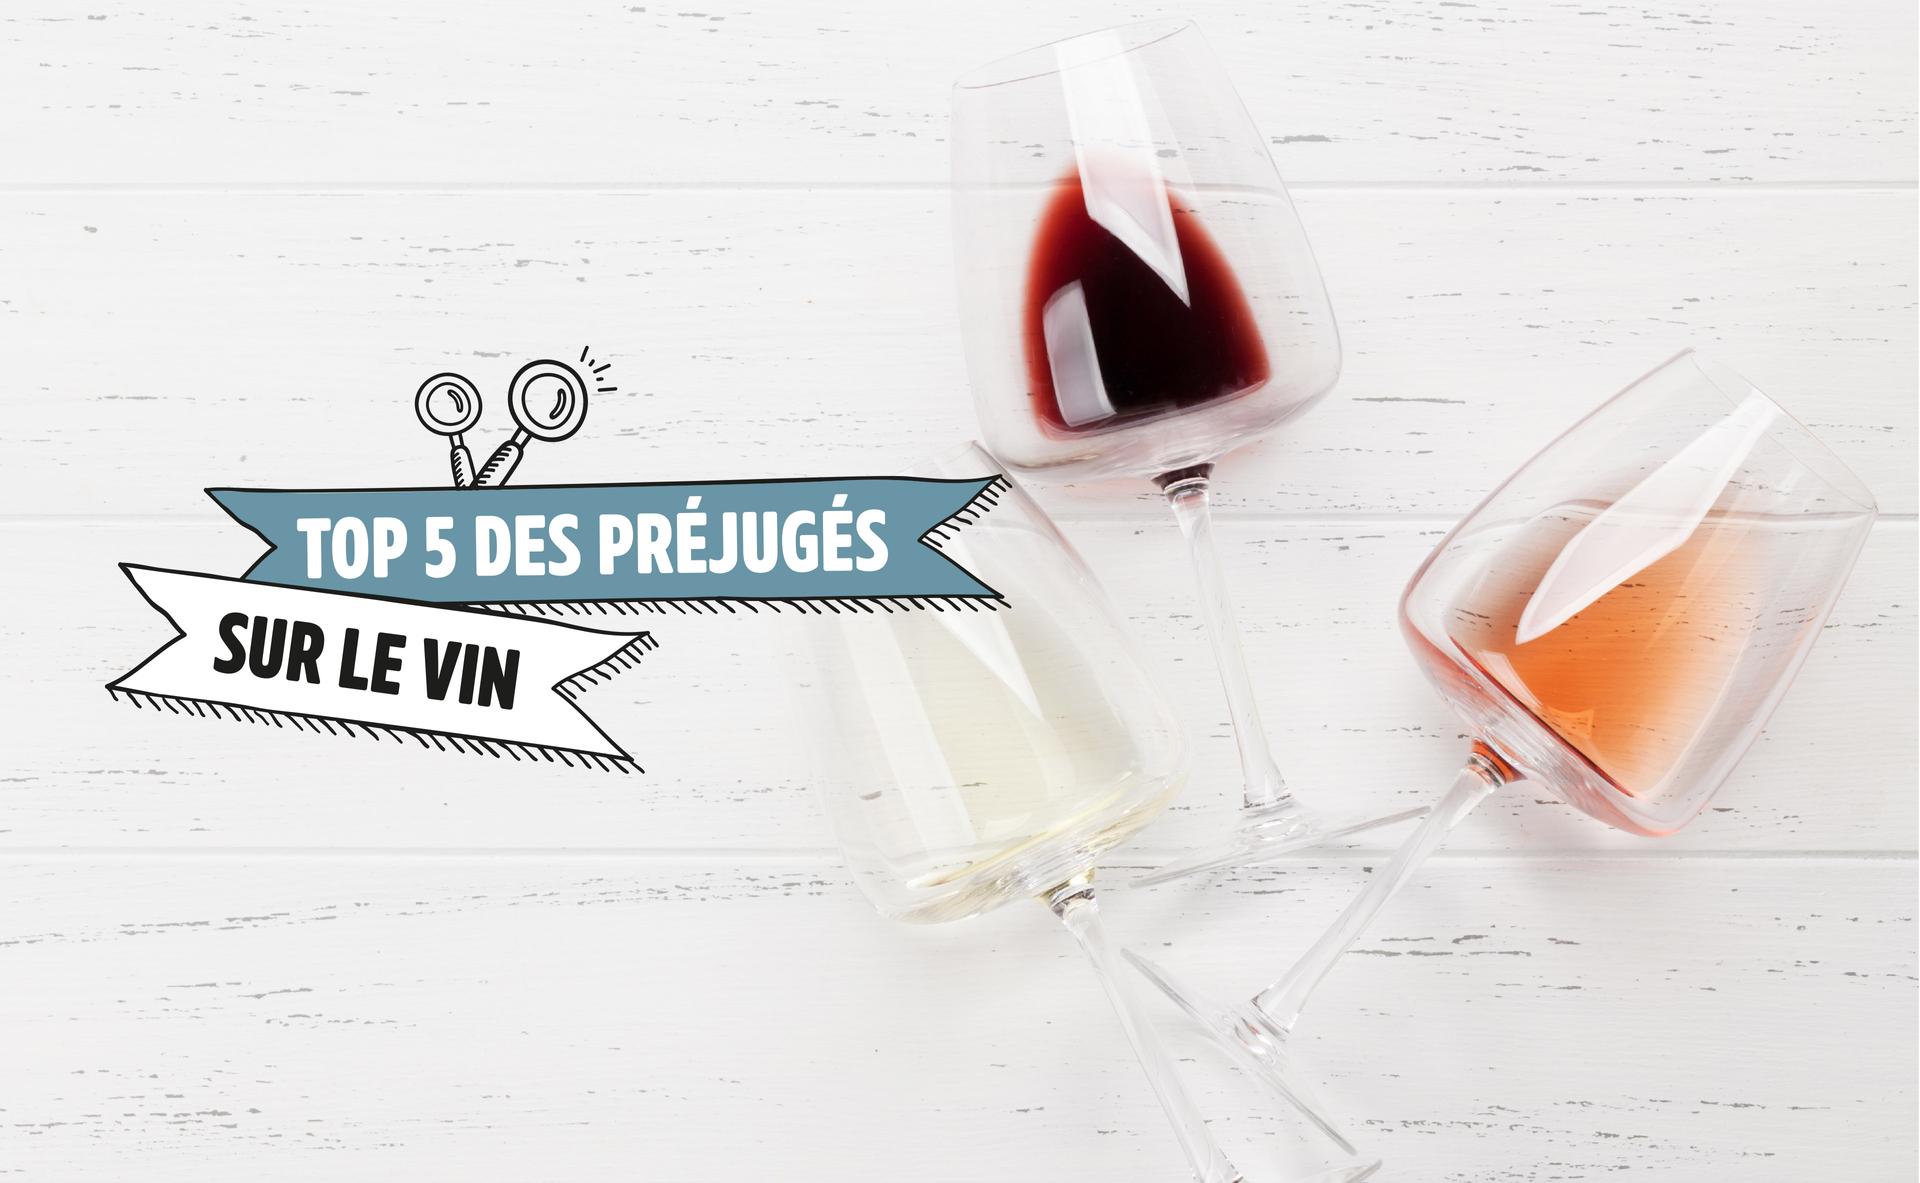 Top 5 des préjugés sur le vin